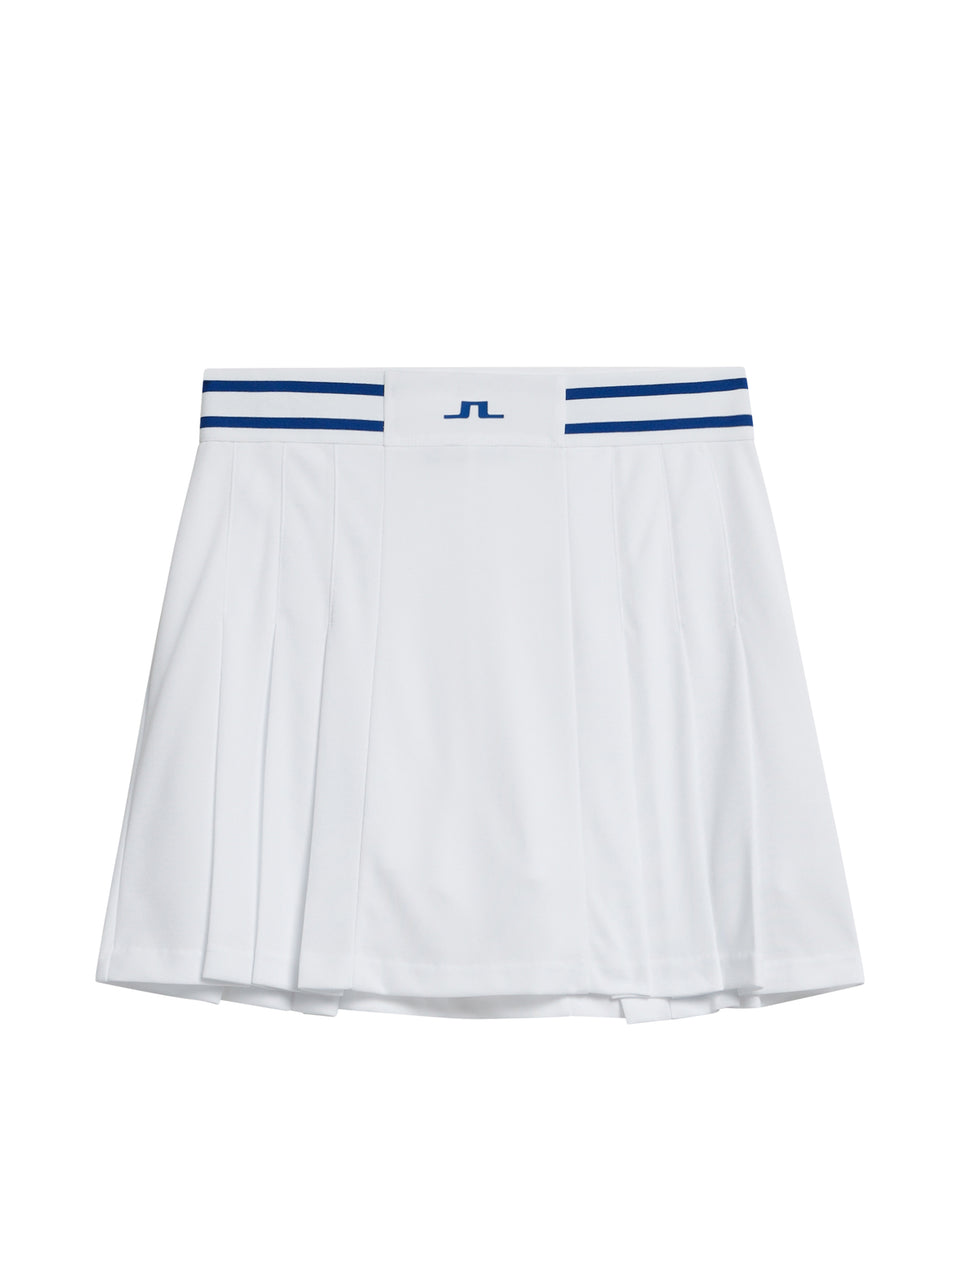 Harlow Skirt / White